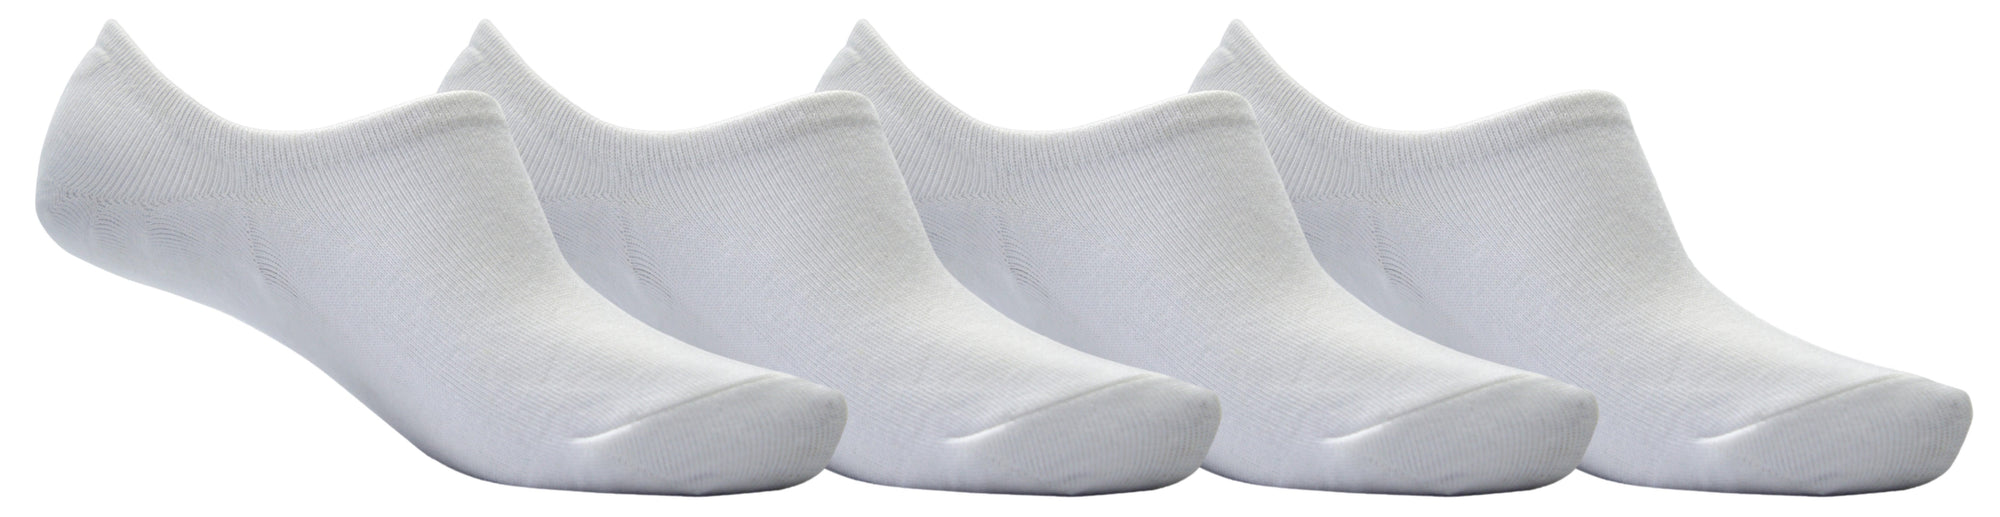 OCTAVE Unisex Plain Invisible Trainer Liner Socks - 4 Pack White